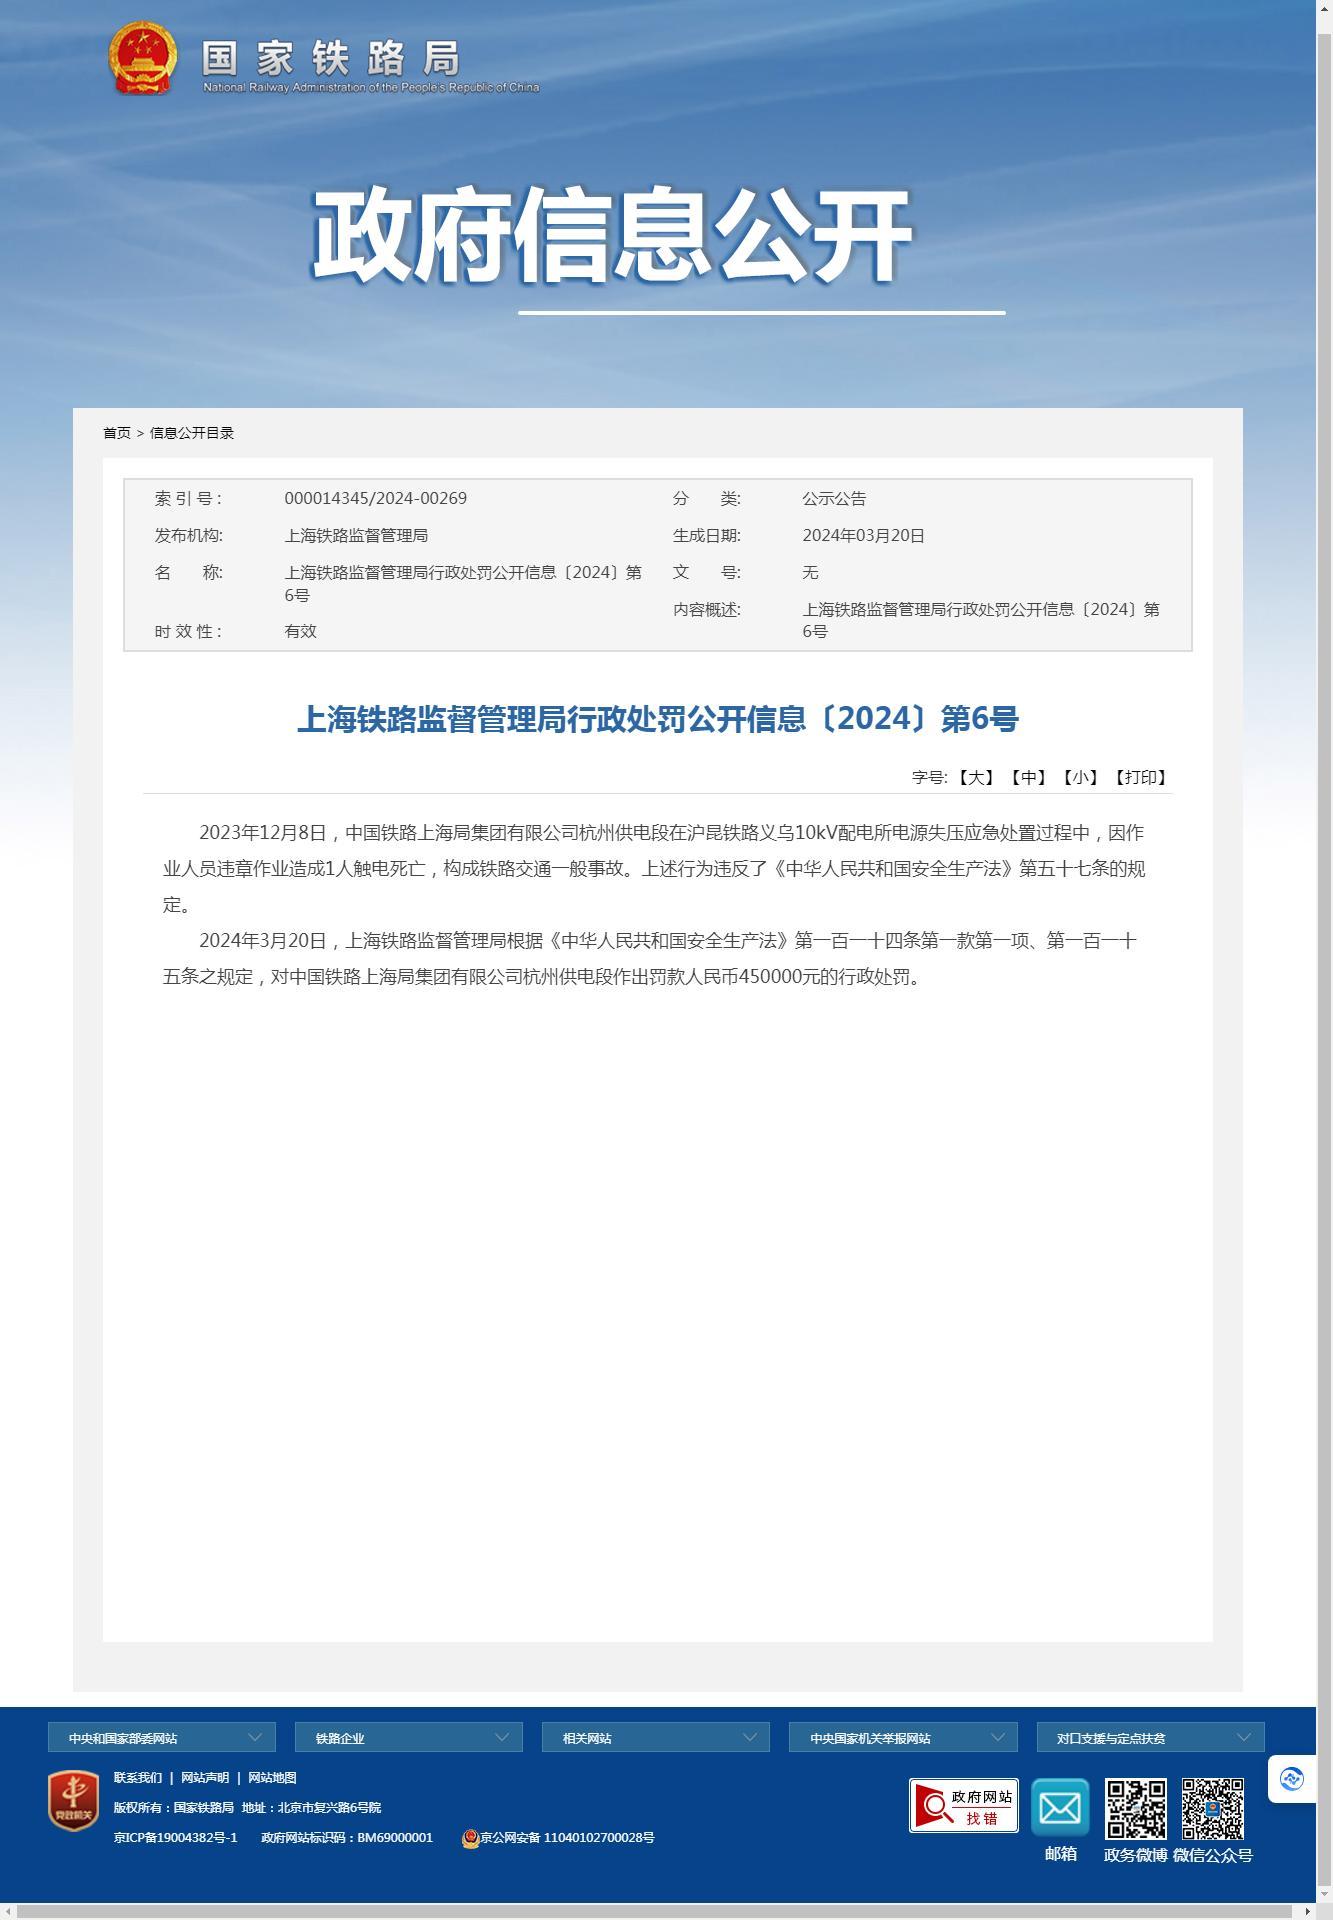 中国铁路上海局集团有限公司杭州供电段因触电致人死亡事故被罚45万元